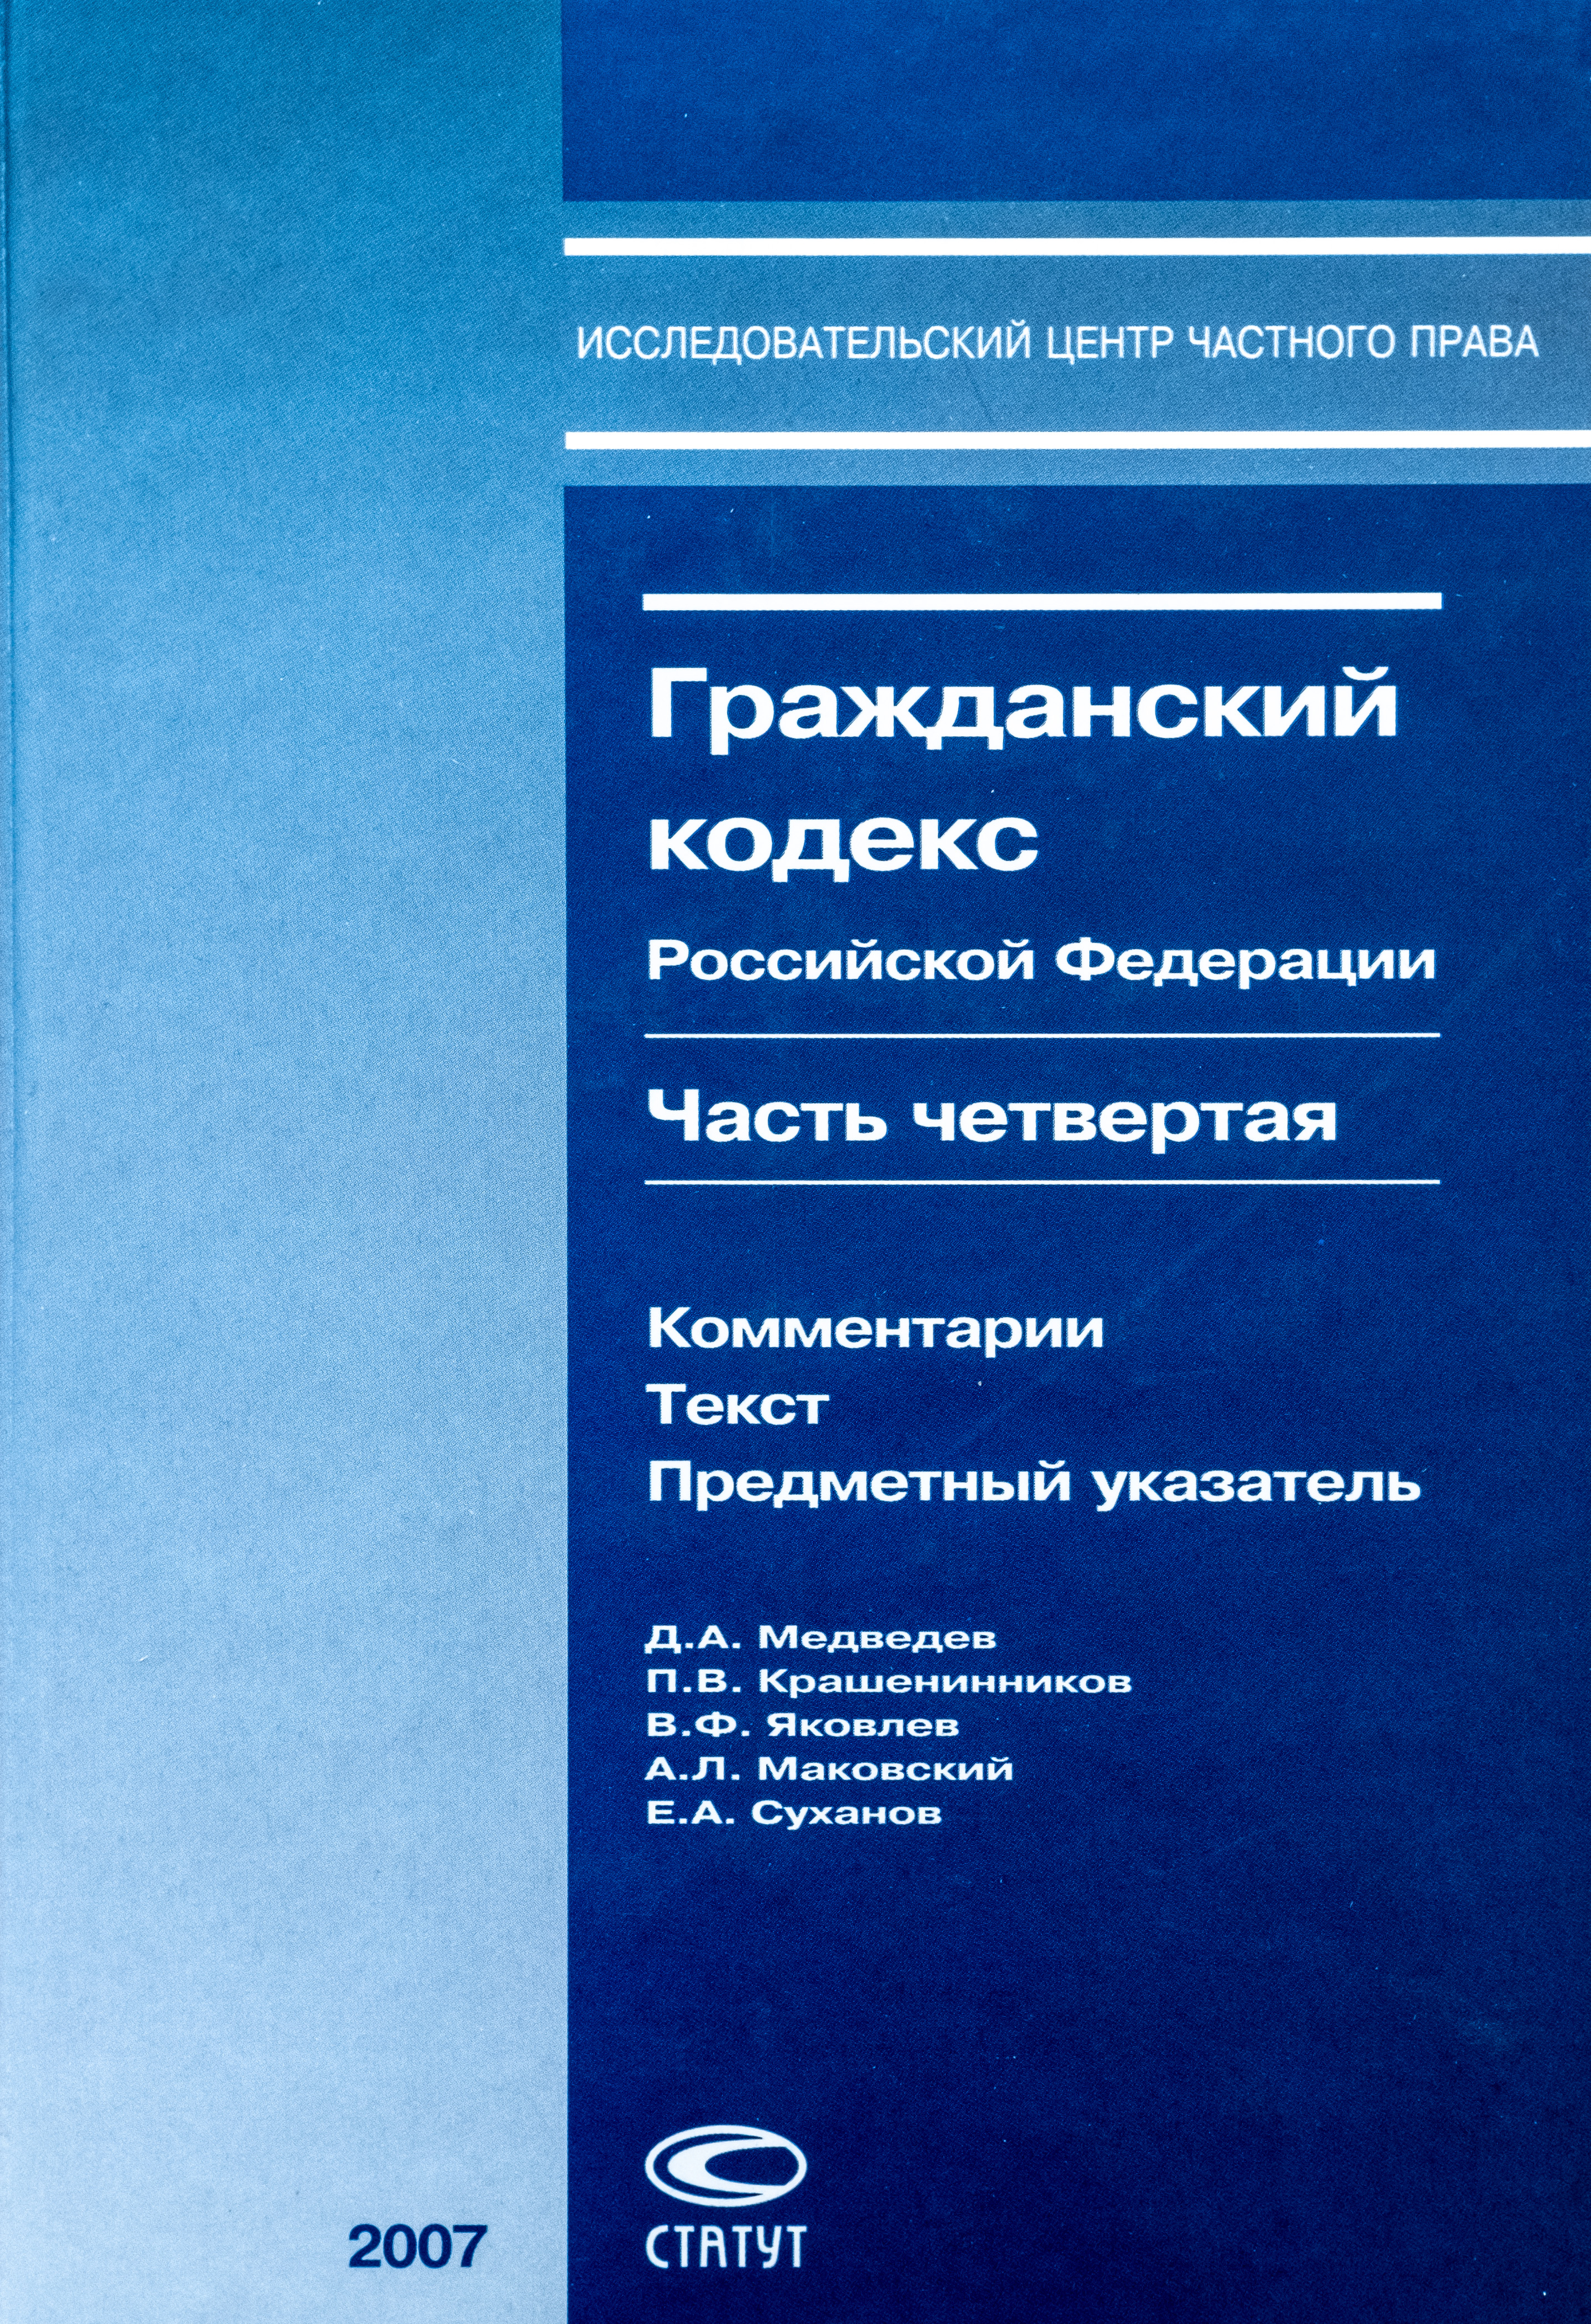 Гражданский кодекс Российской Федерации. Часть четвертая: Комментарии. Текст. Предметный указатель